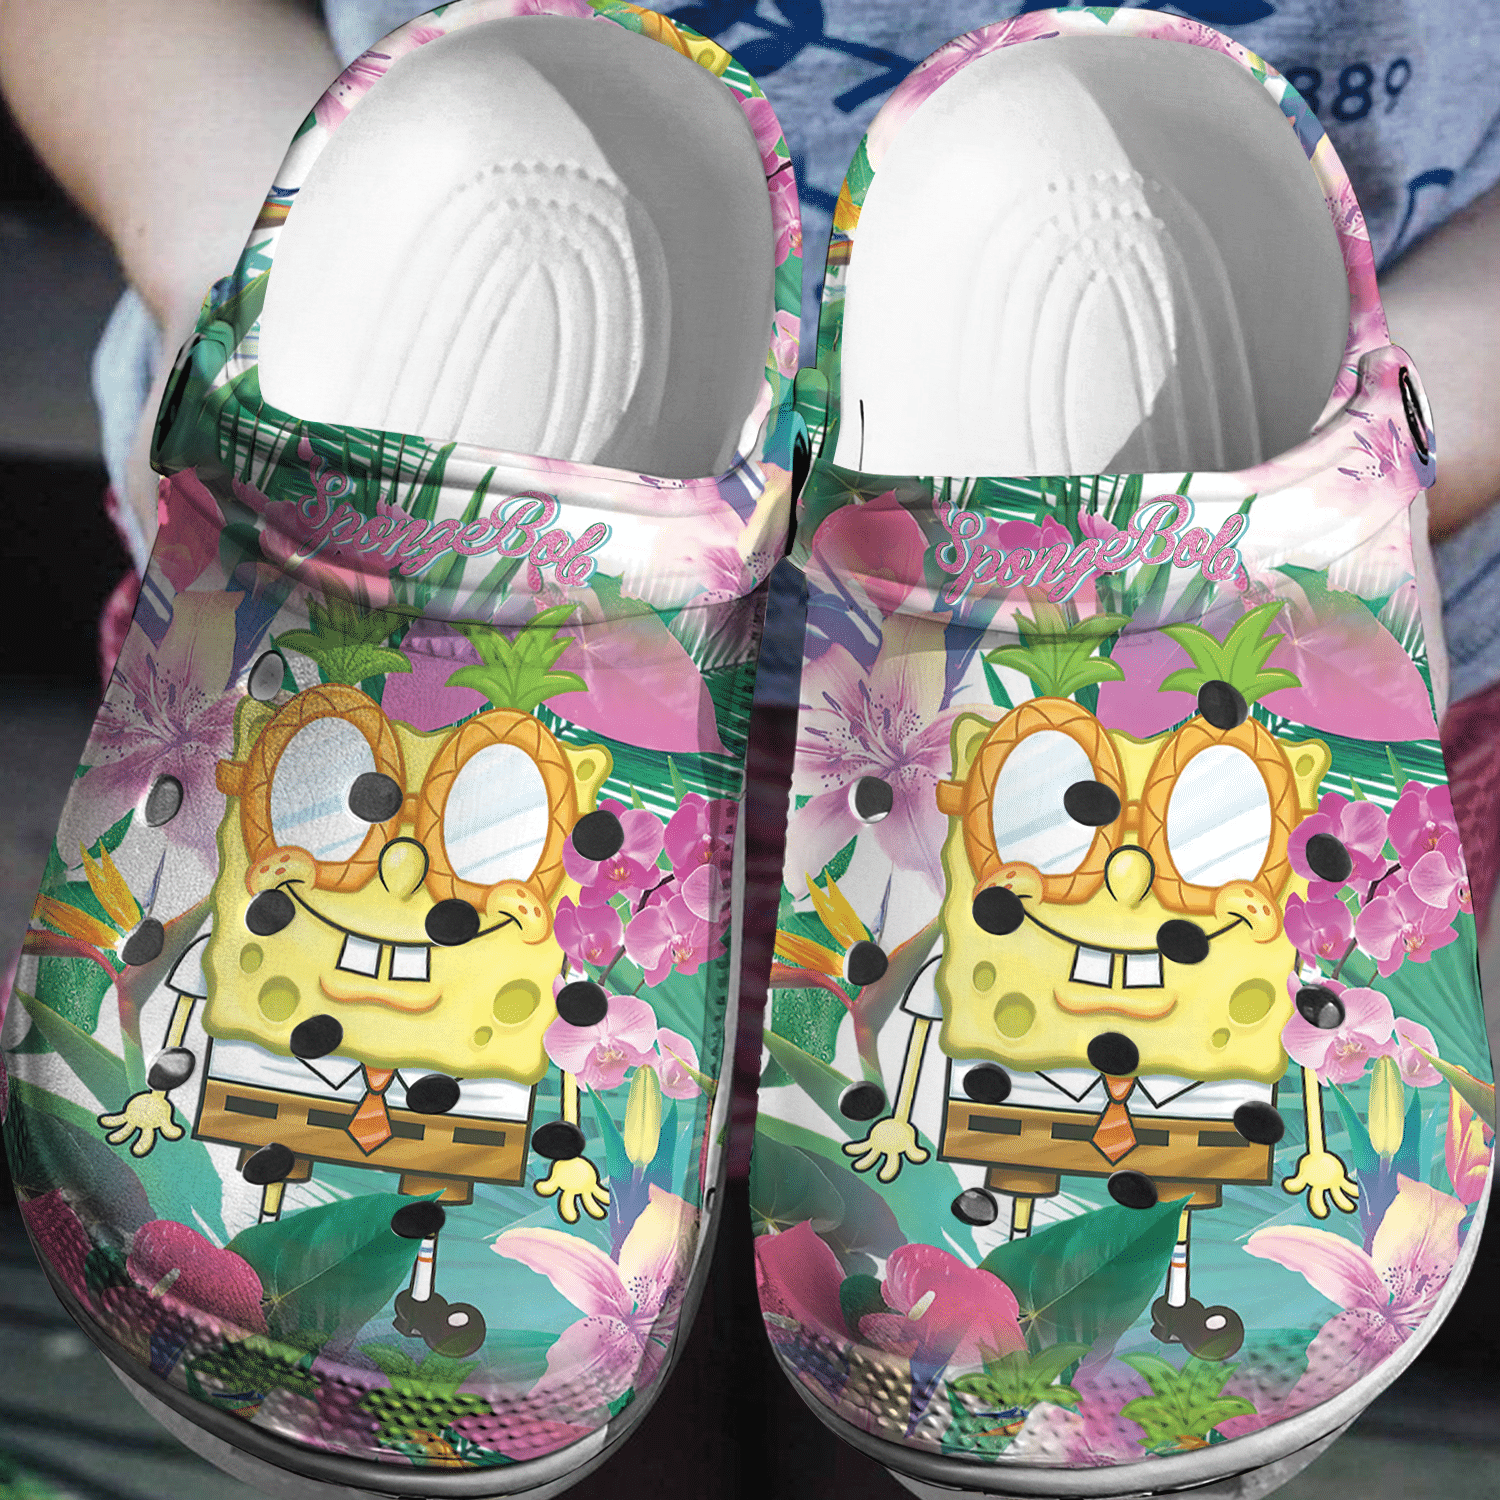 Spongebob Squarepants Tropical Crocs 3D Clog Shoes